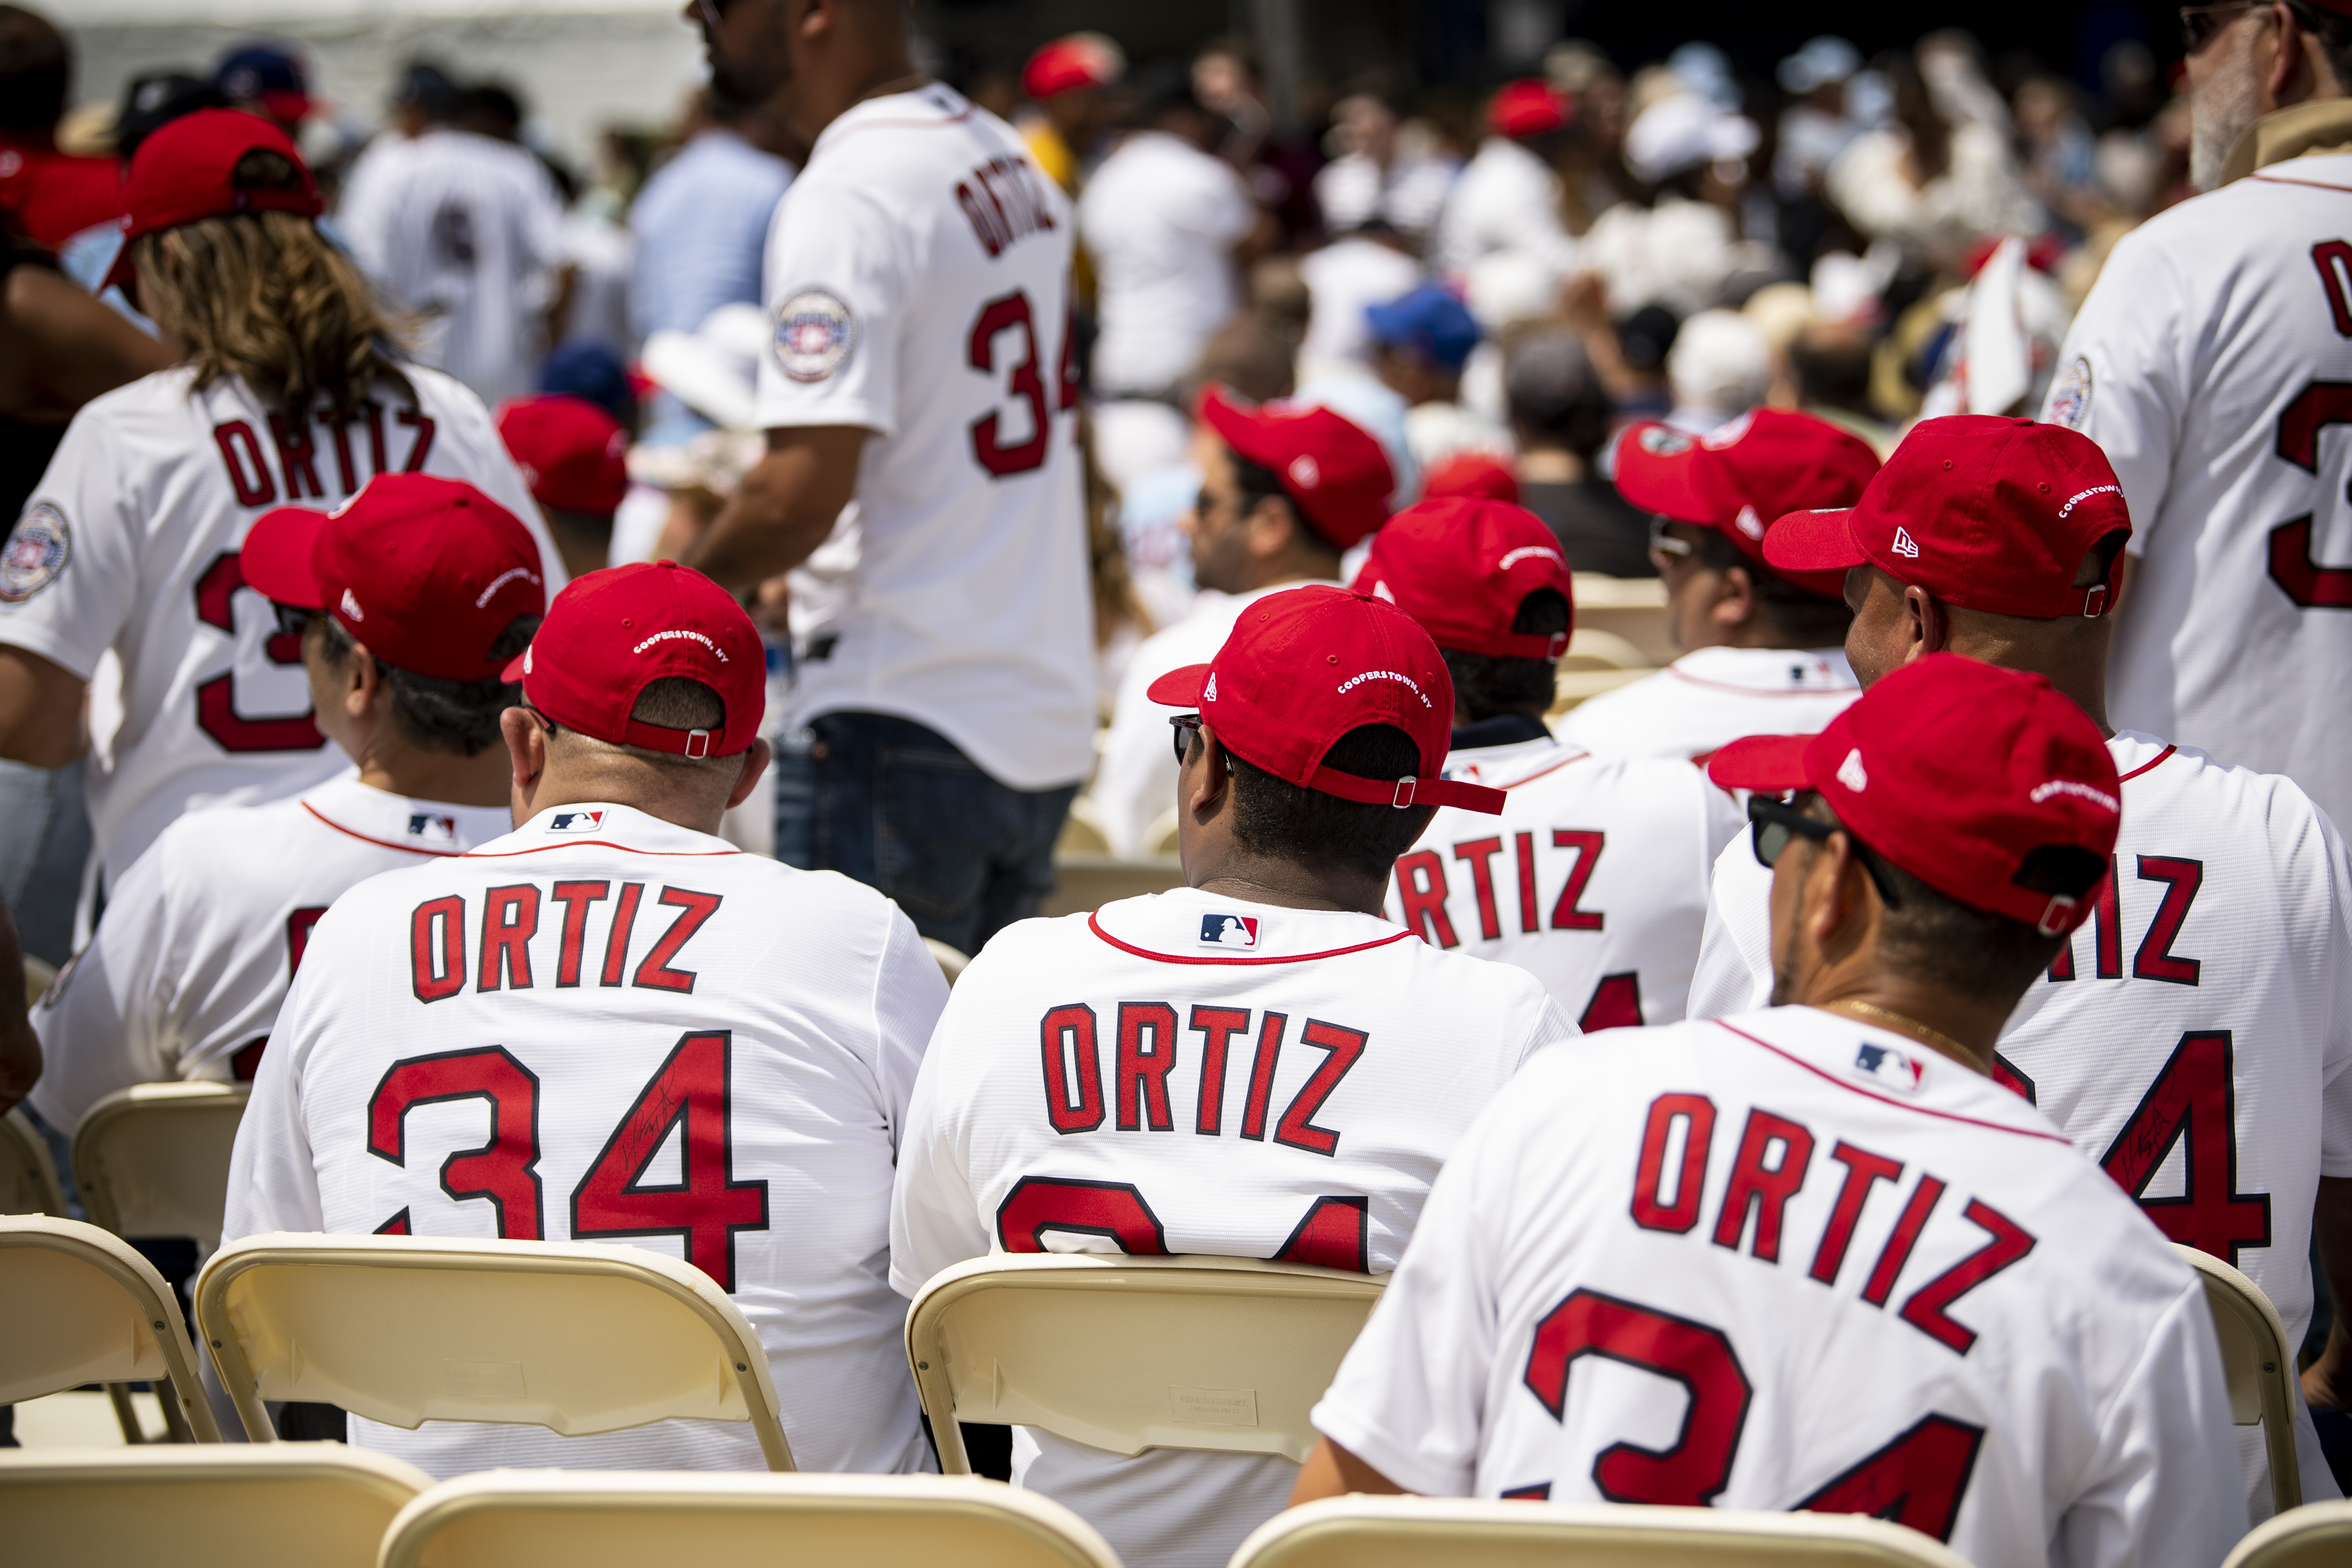 Ortiz, David  Baseball Hall of Fame